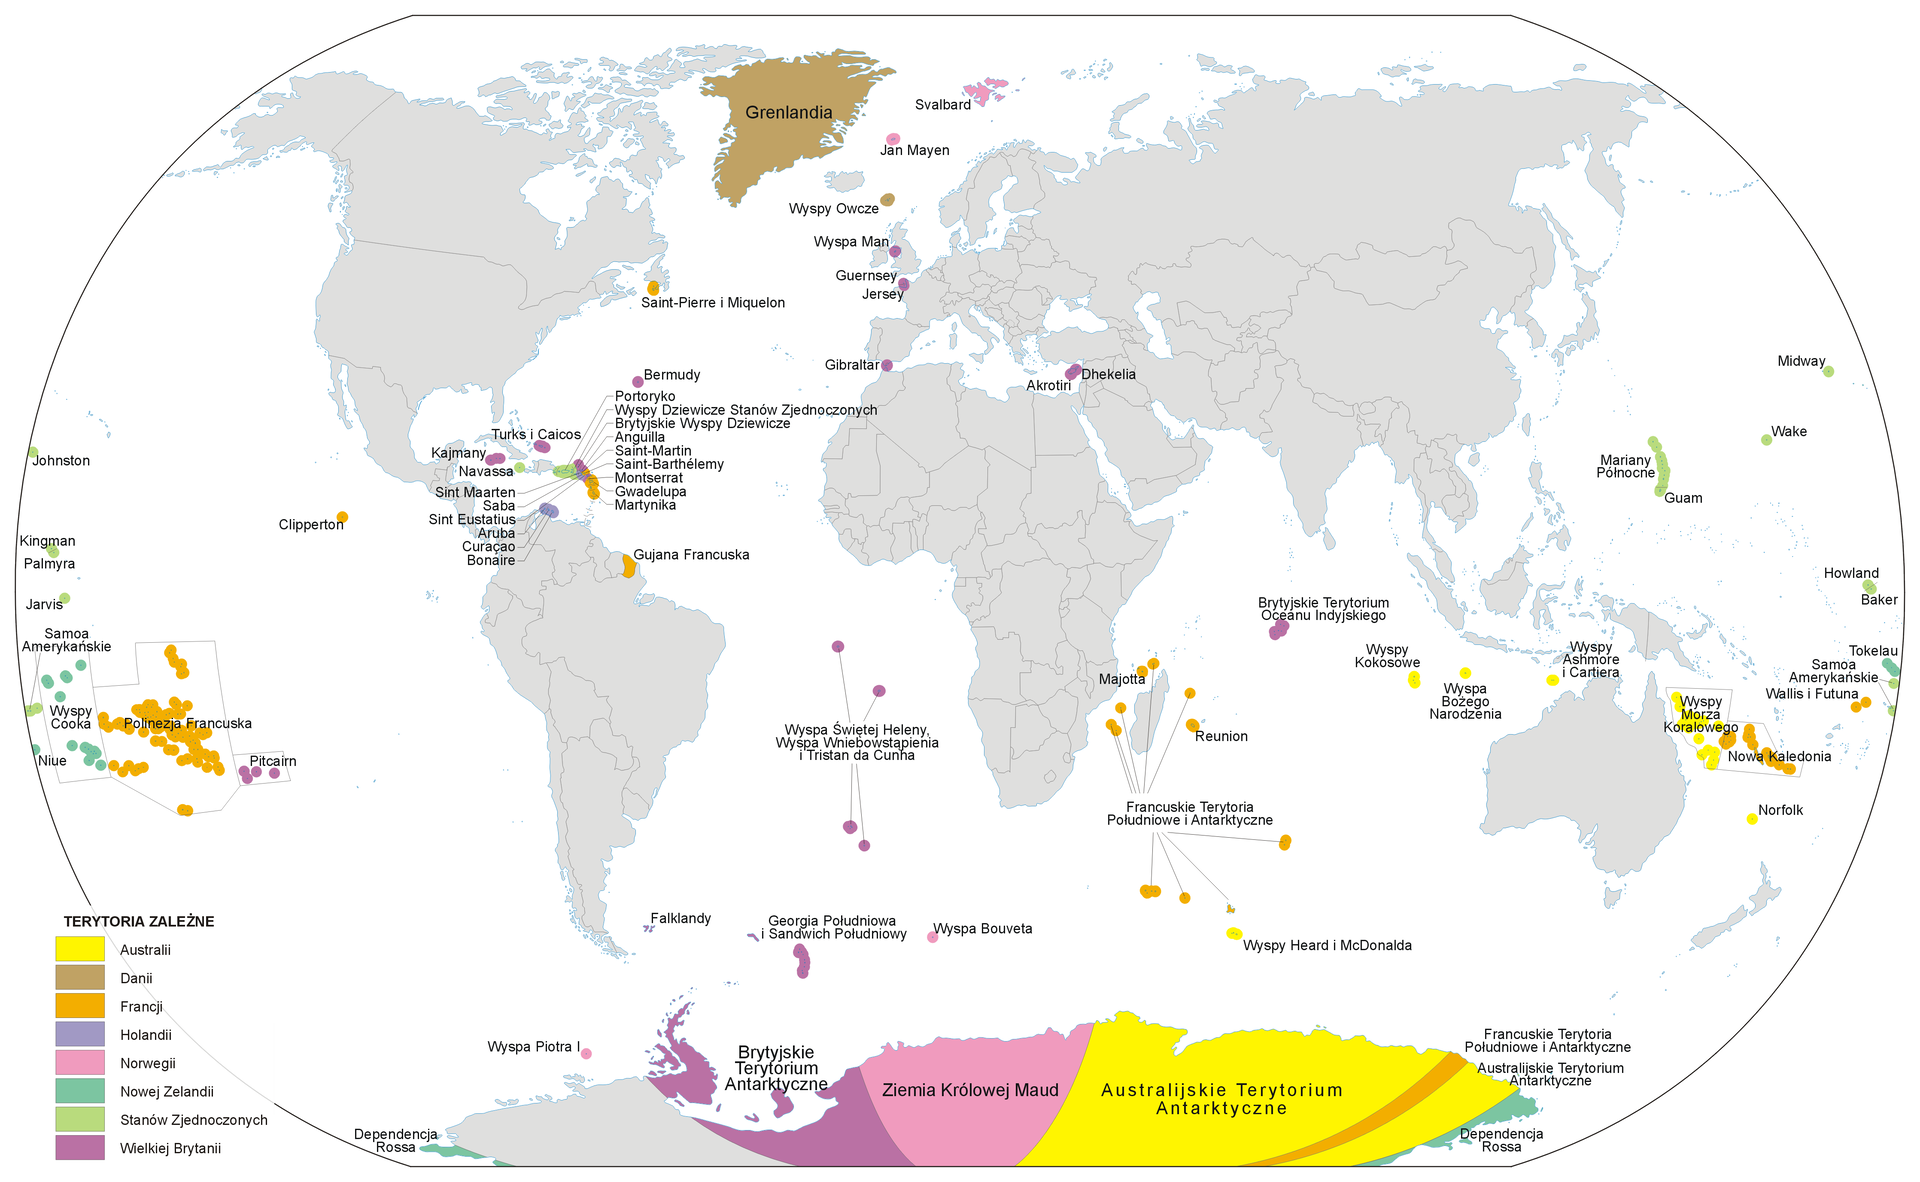 Na ilustracji mapa świata w owalnym kształcie. Lądy szare, morza białe. Kolorami zaznaczono terytoria zależne. Żółte – Australia, brązowe – Dania, pomarańczowe – Francja, fioletowe – Holandia, różowe – Norwegia, zielone – Nowa Zelandia, seledynowe – Stany Zjednoczone, śliwkowe – Wielka Brytania. Kolorami oznaczono głównie archipelagi małych wysepek oraz Grenlandię (brąz) i Antarktyda (różne kolory).